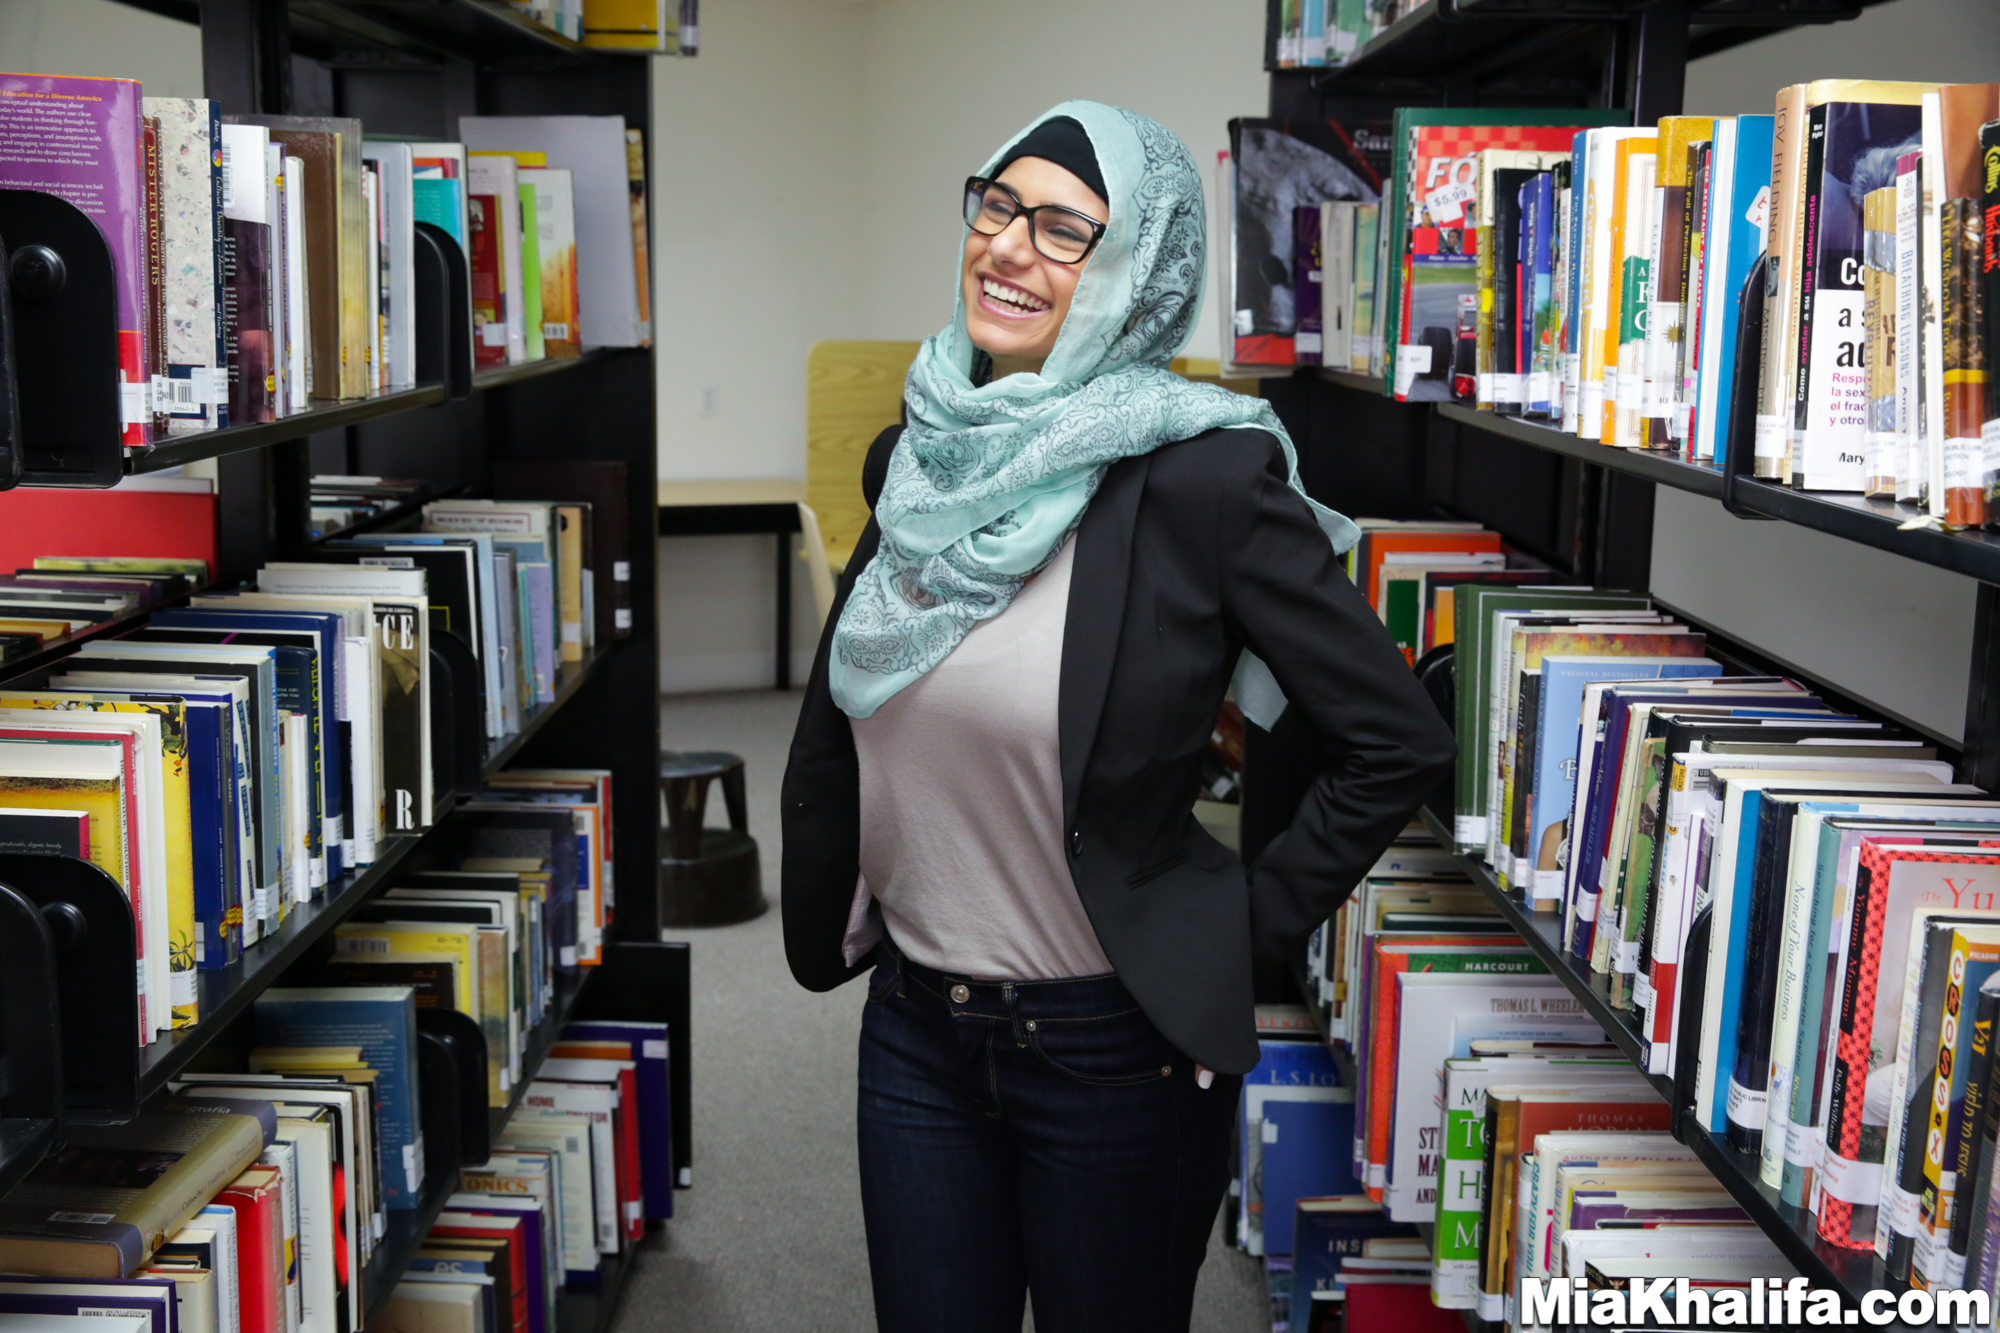 mia-khalifa-library-boobs-naked-hijab-arab-women-02